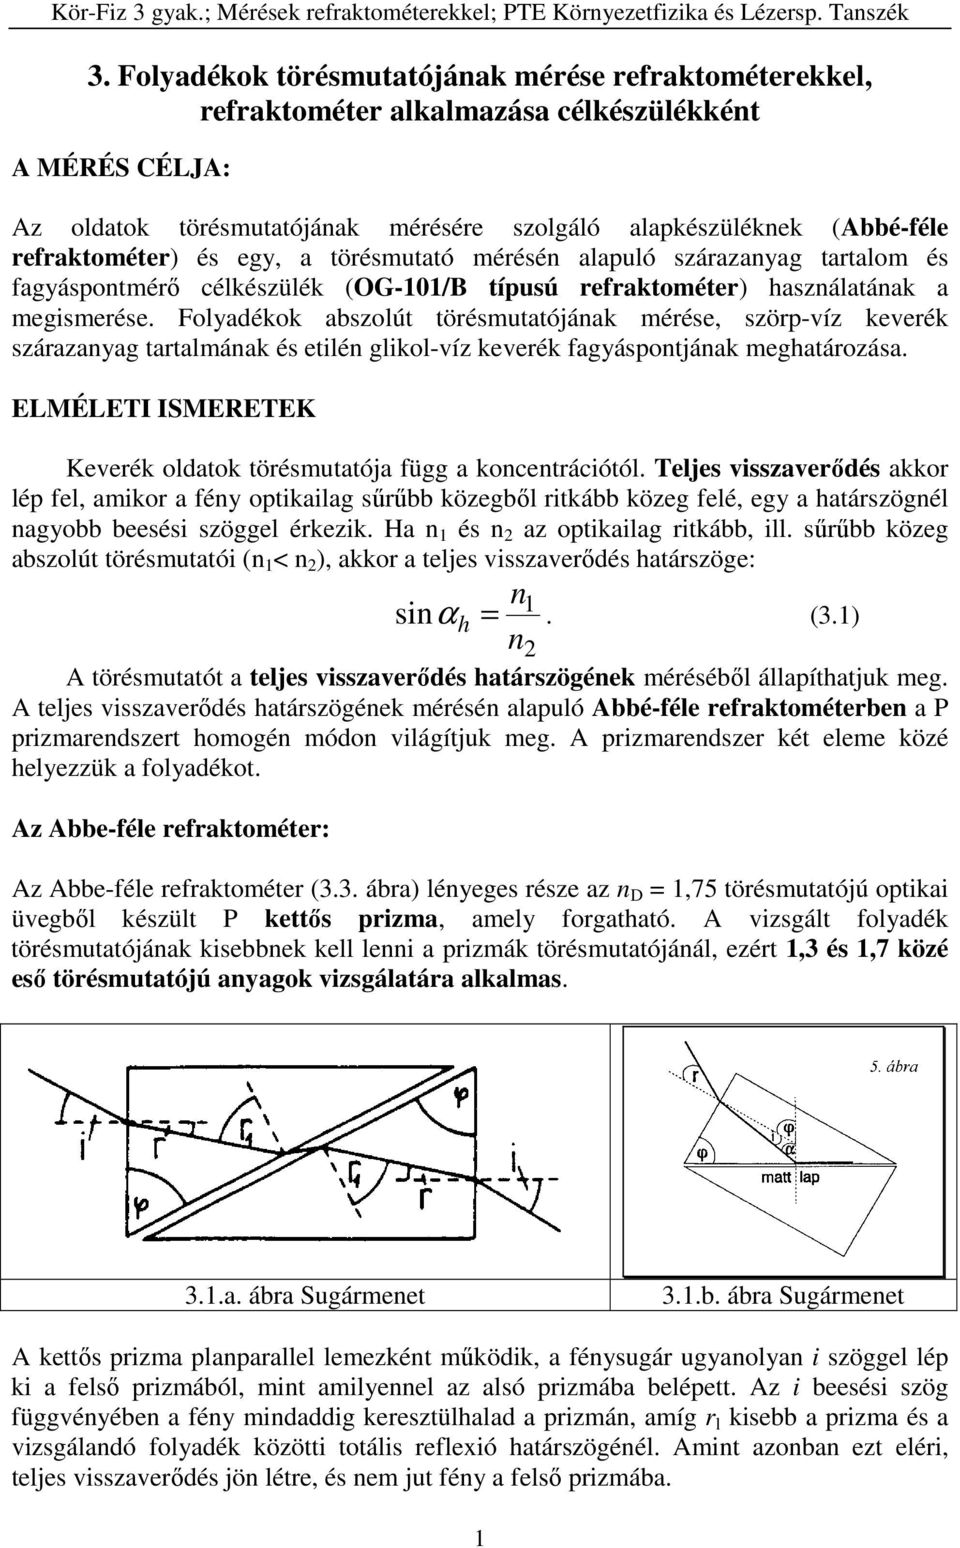 Kör-Fiz 3 gyak.; Mérések refraktométerekkel; PTE Környezetfizika és  Lézersp. Tanszék - PDF Free Download